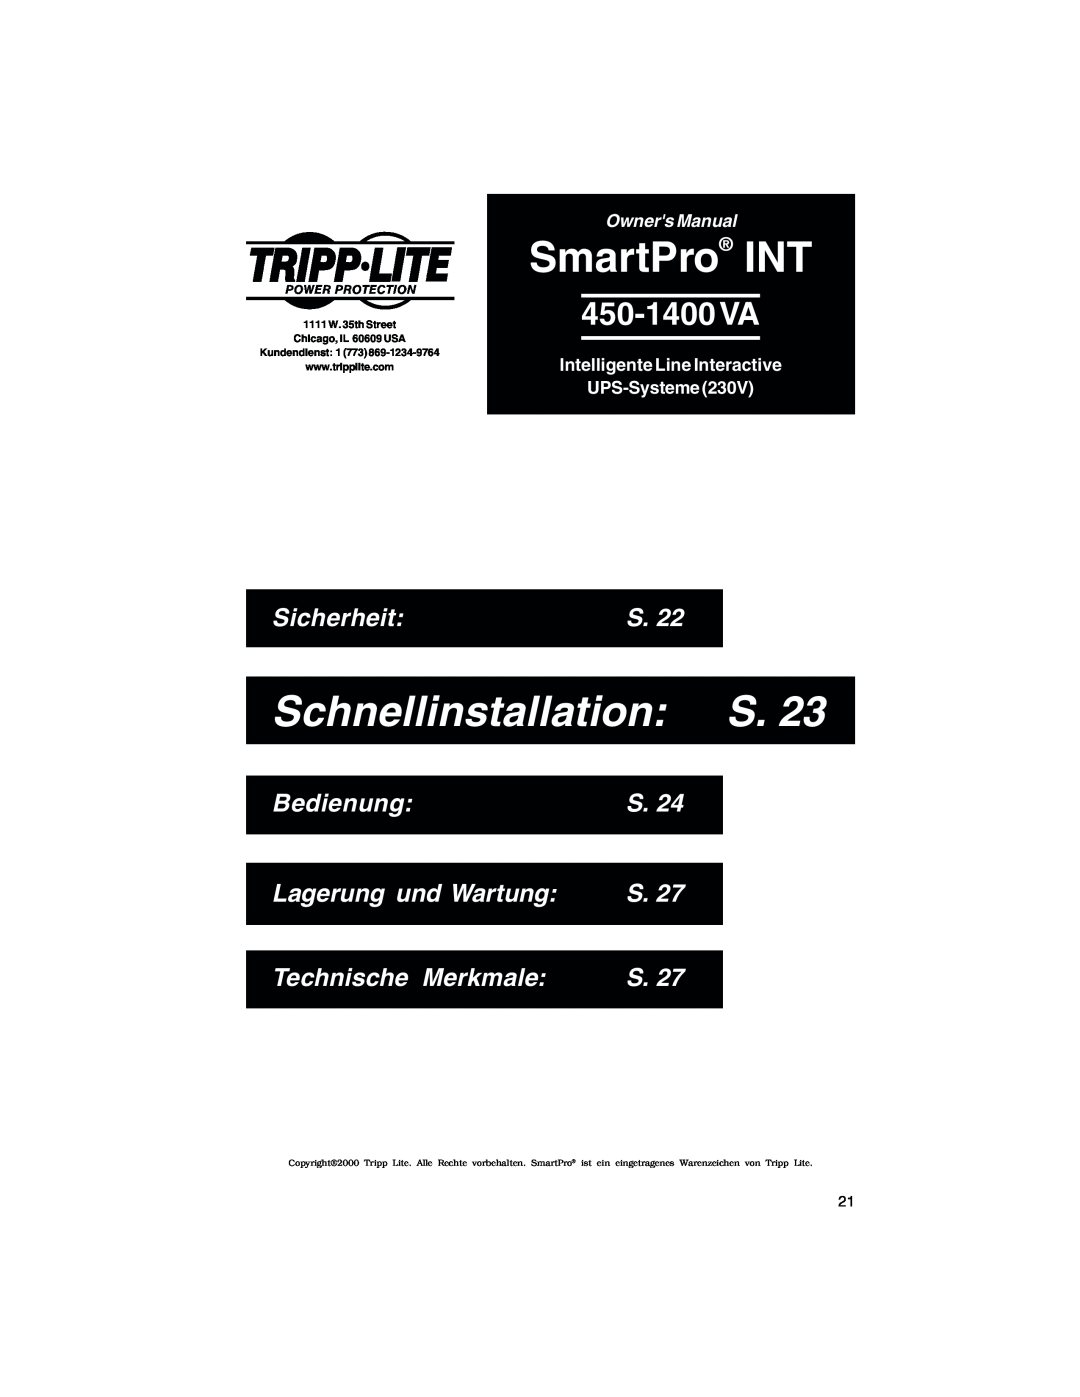 Tripp Lite 450-1400VA Schnellinstallation S, Sicherheit, Bedienung, Lagerung und Wartung, Technische Merkmale, 450-1400 VA 